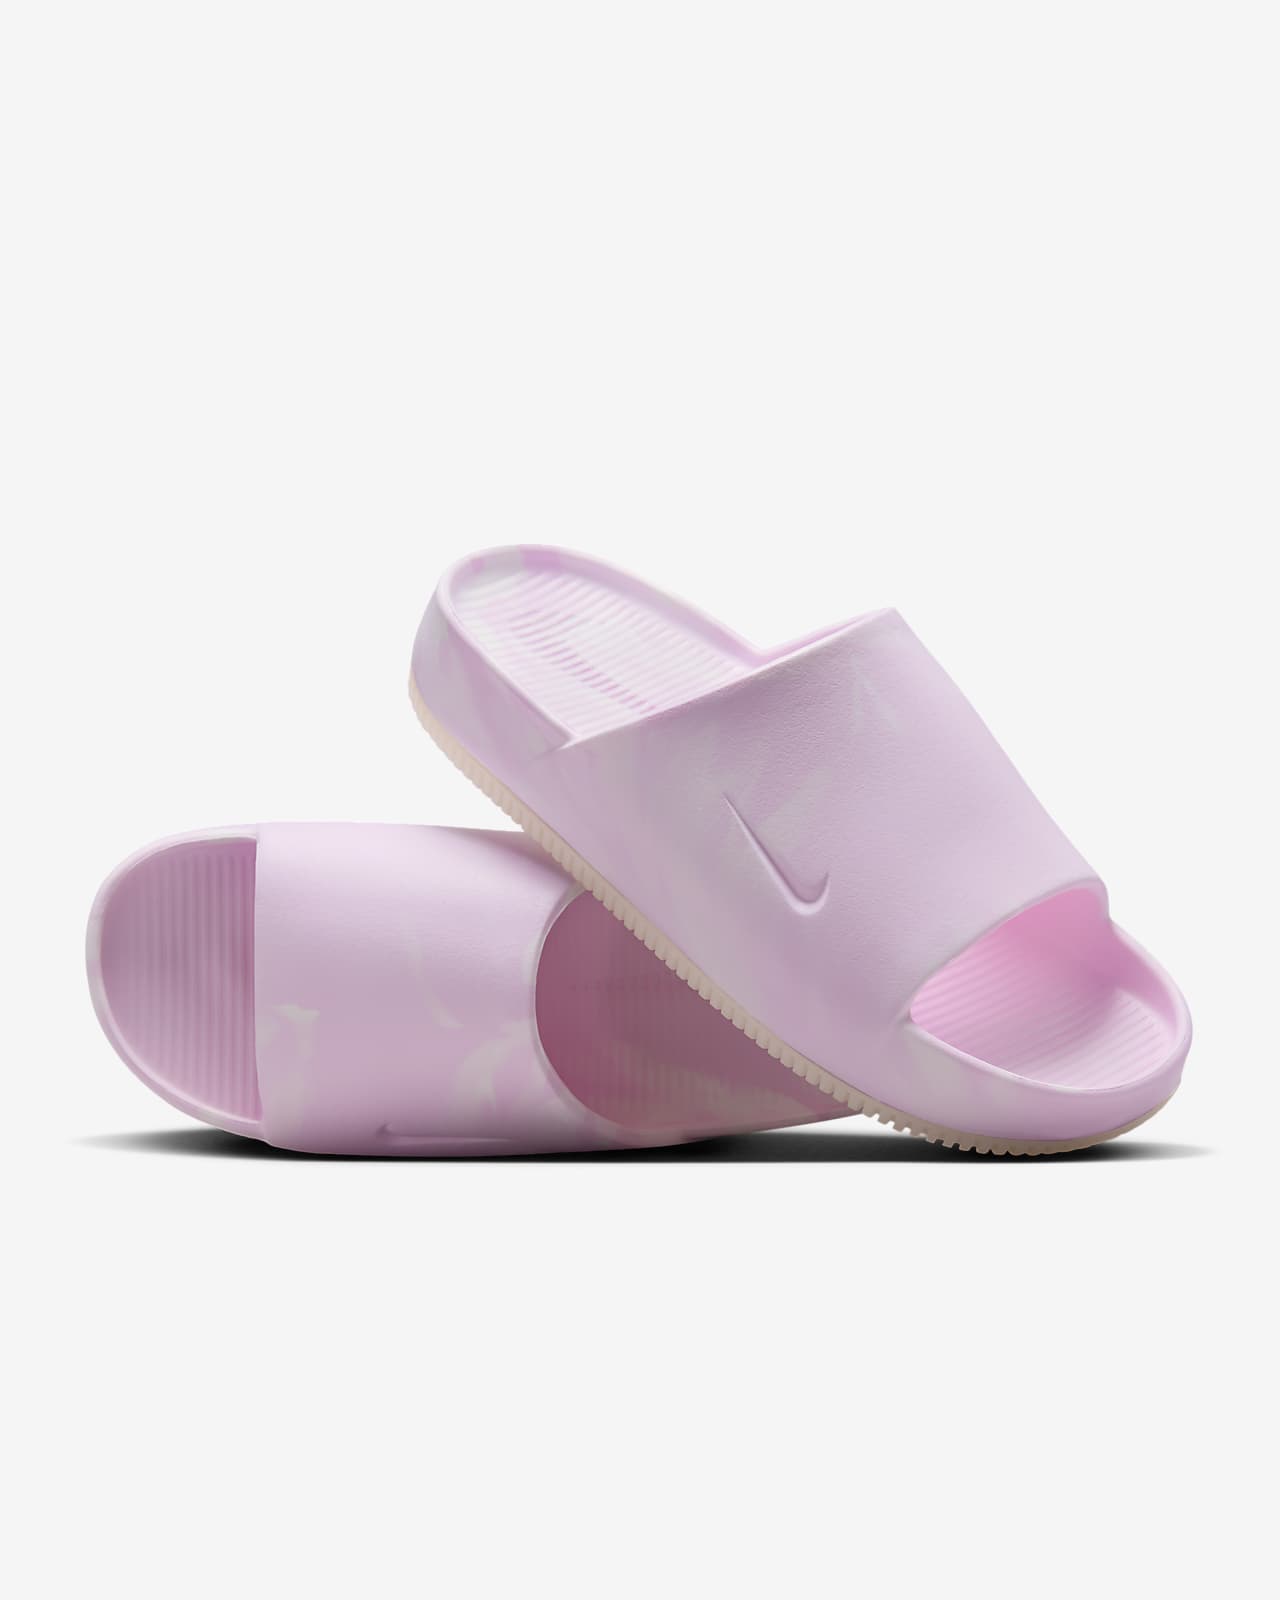 Nike Calm SE Women's Slides